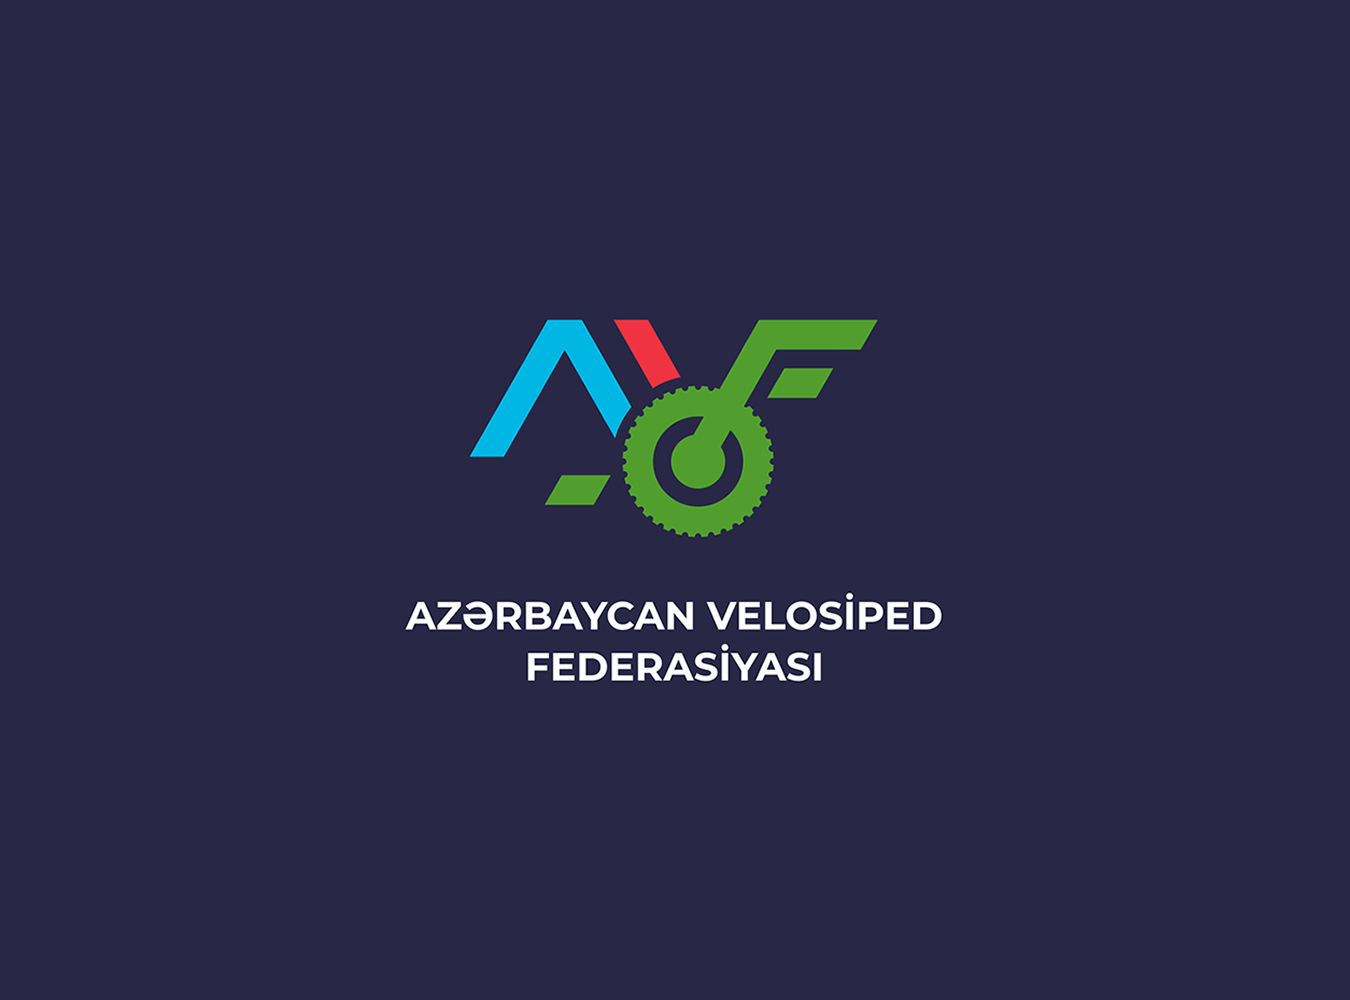 “Azərbaycan Velosiped Federasiyası” İctimai Birliyinin etik davranış qaydası